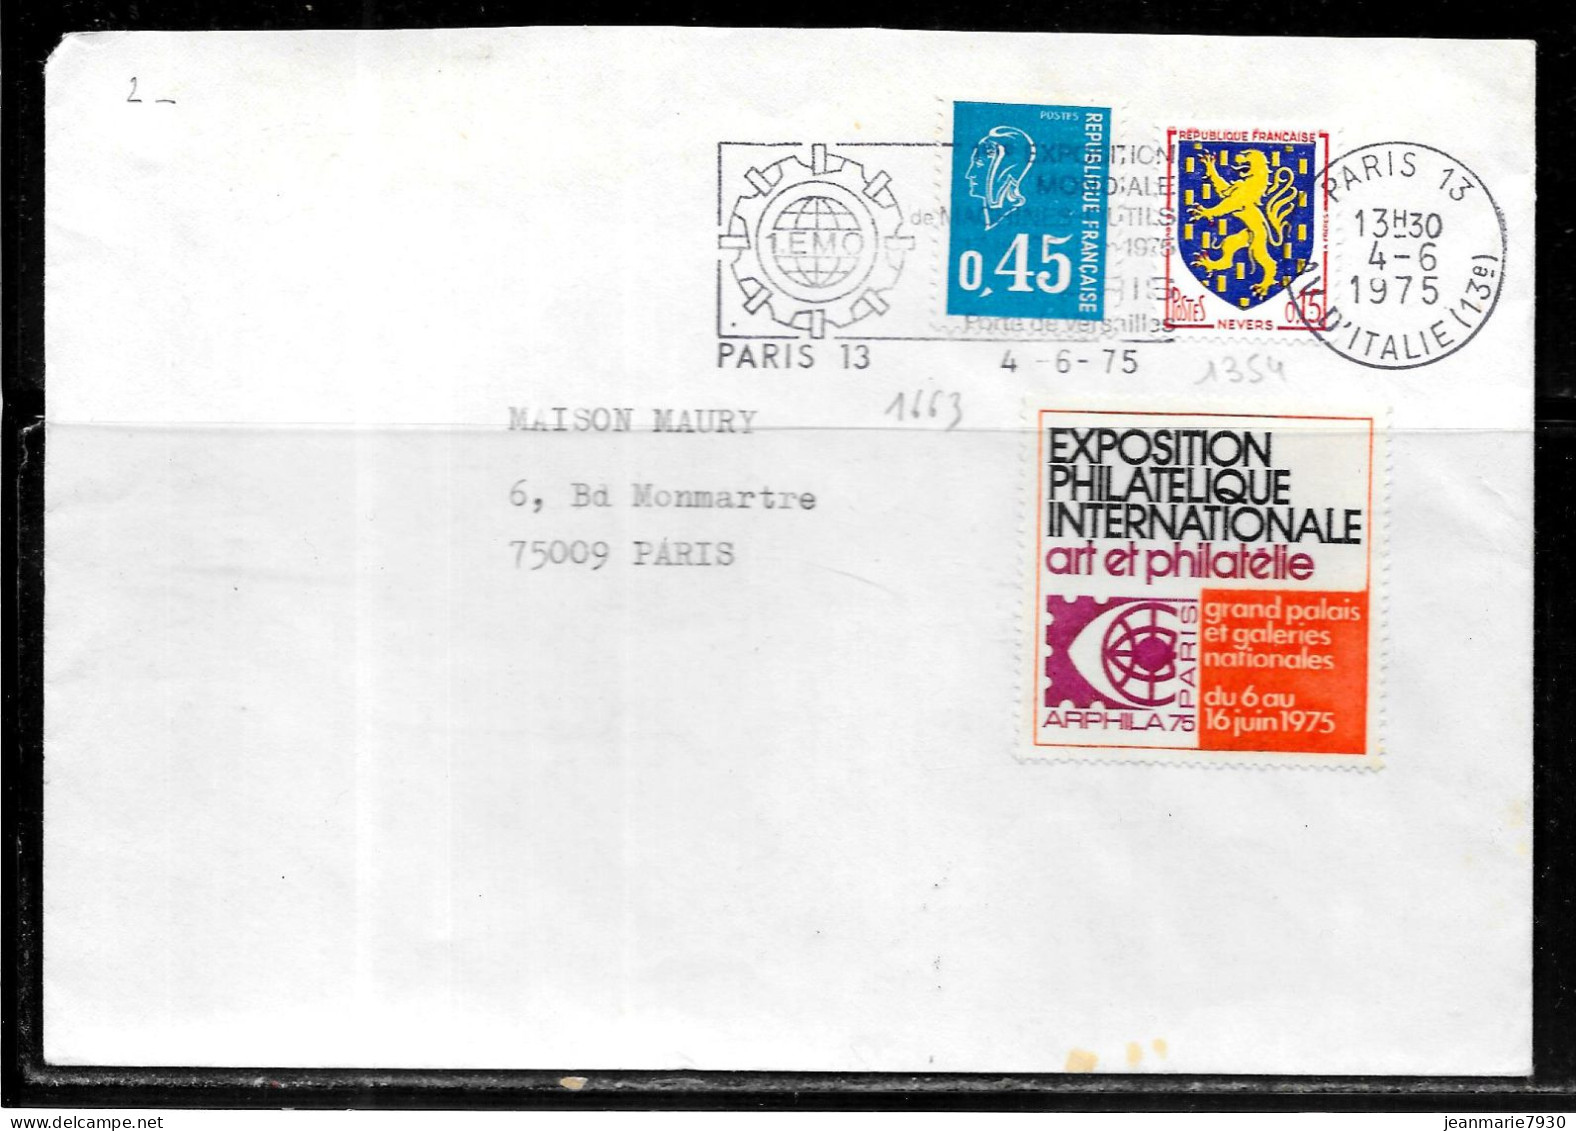 F269 - LETTRE DE PARIS 13 DU 04/06/75 - VIGNETTE ARPHILA 75 - Covers & Documents